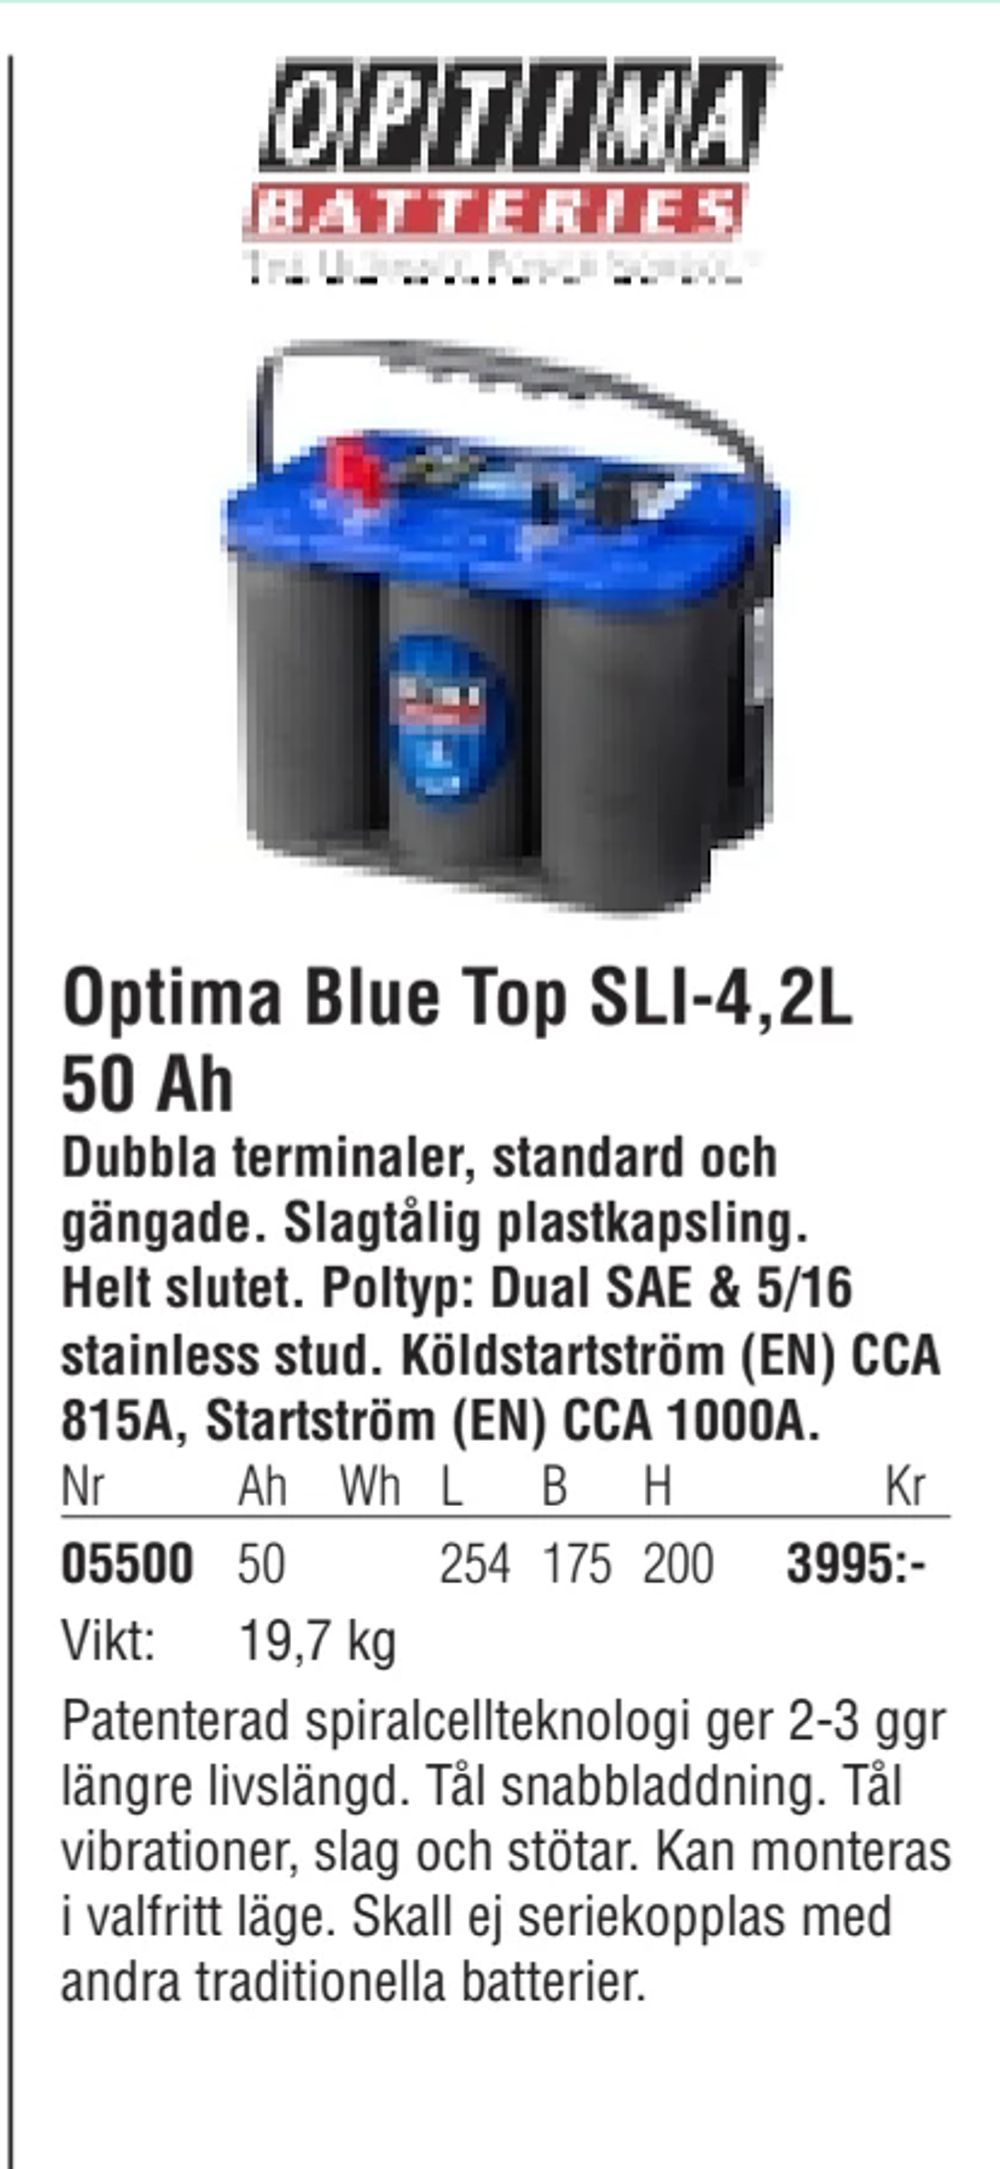 Erbjudanden på Optima Blue Top SLI-4,2L 50 Ah från Erlandsons Brygga för 3 995 kr